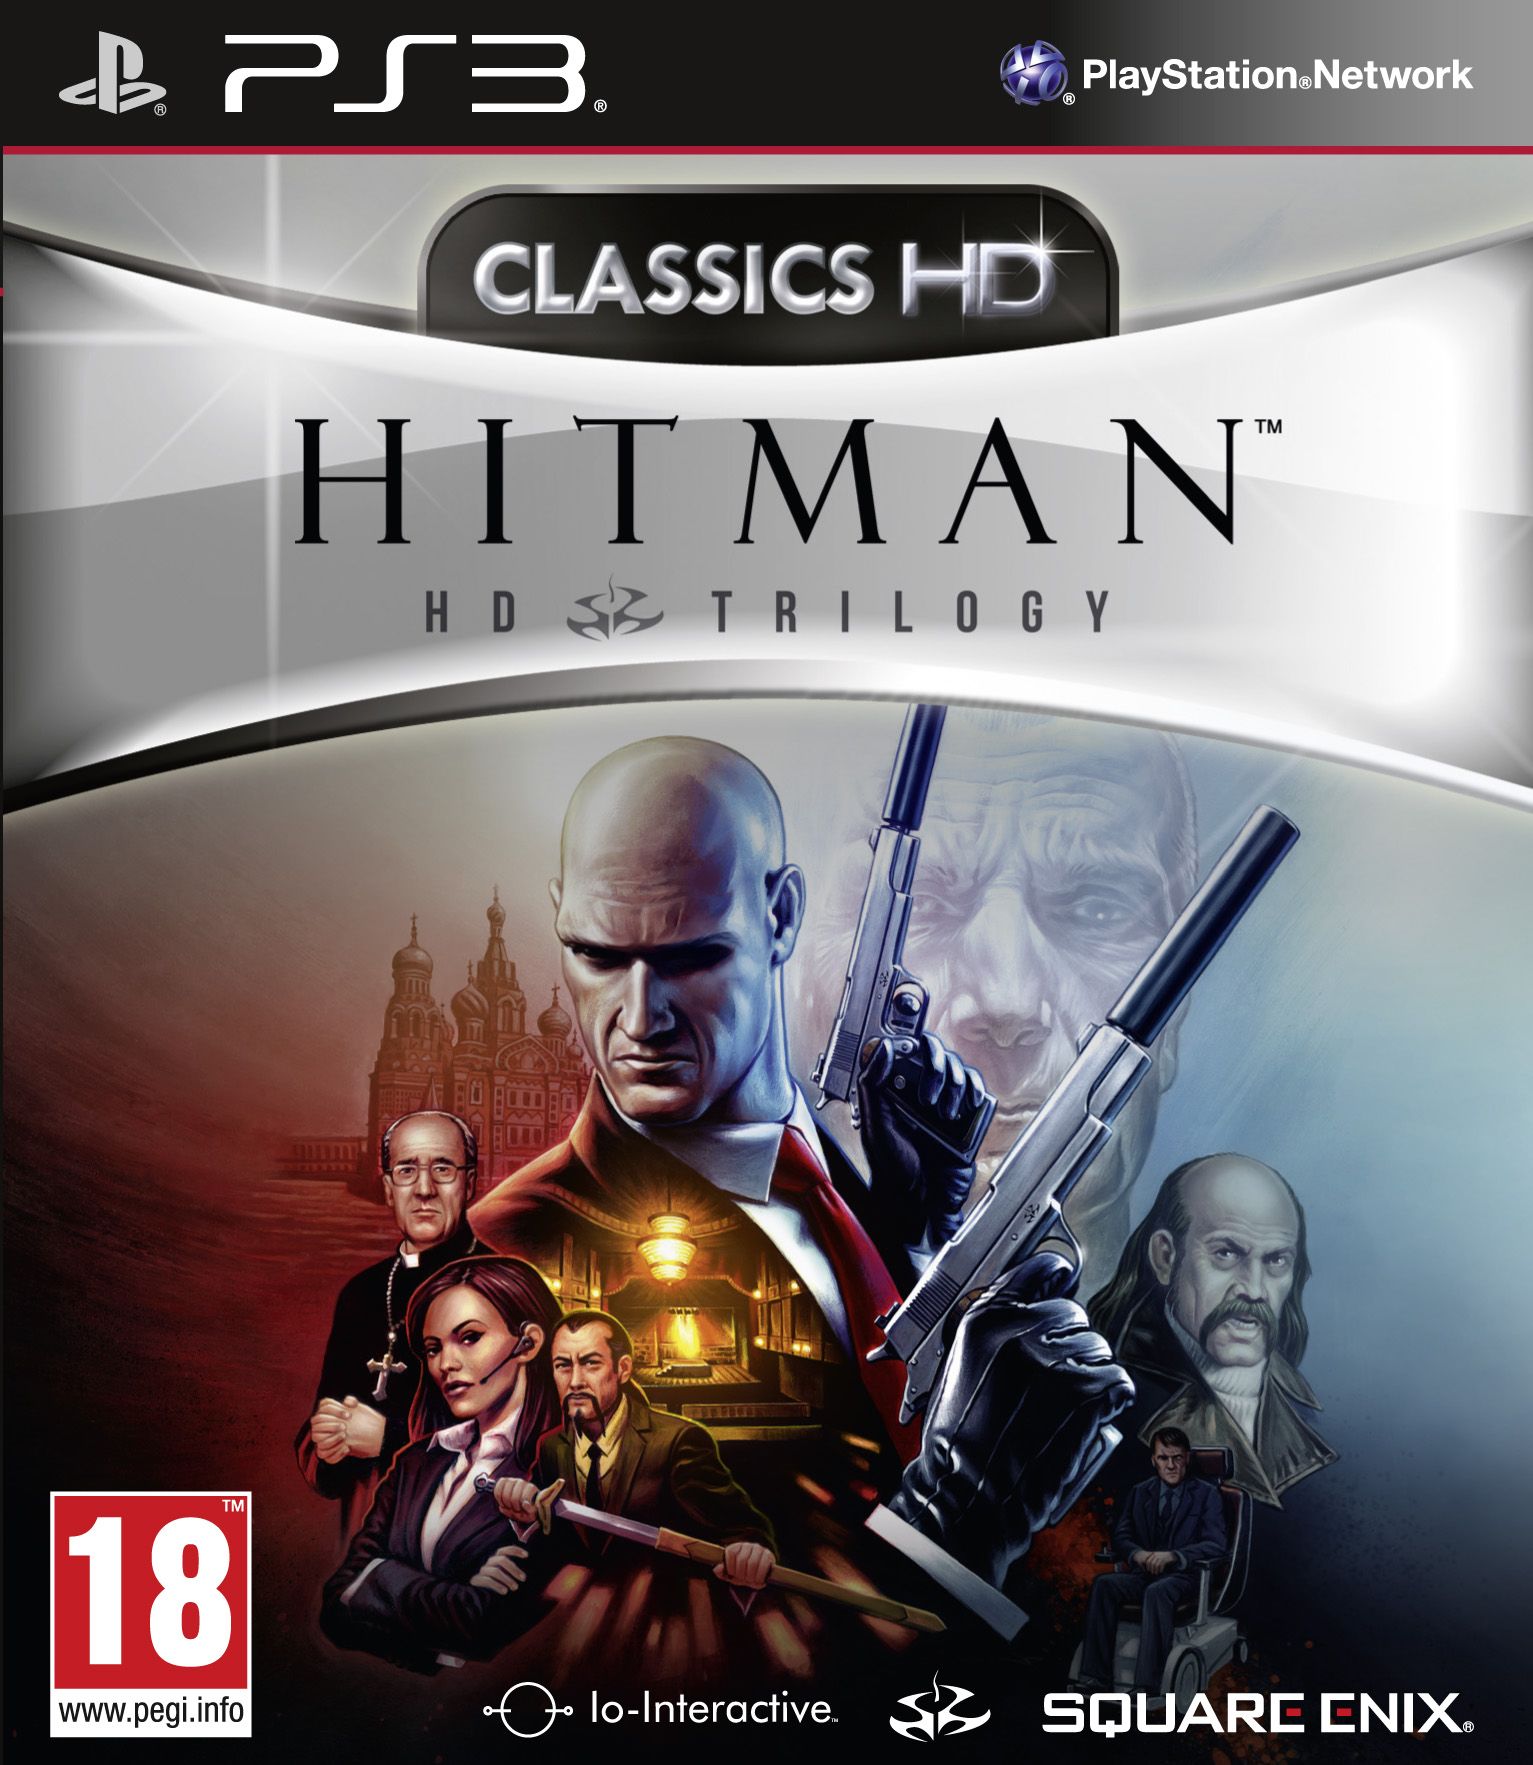 Hitman Trilogy HD Collection